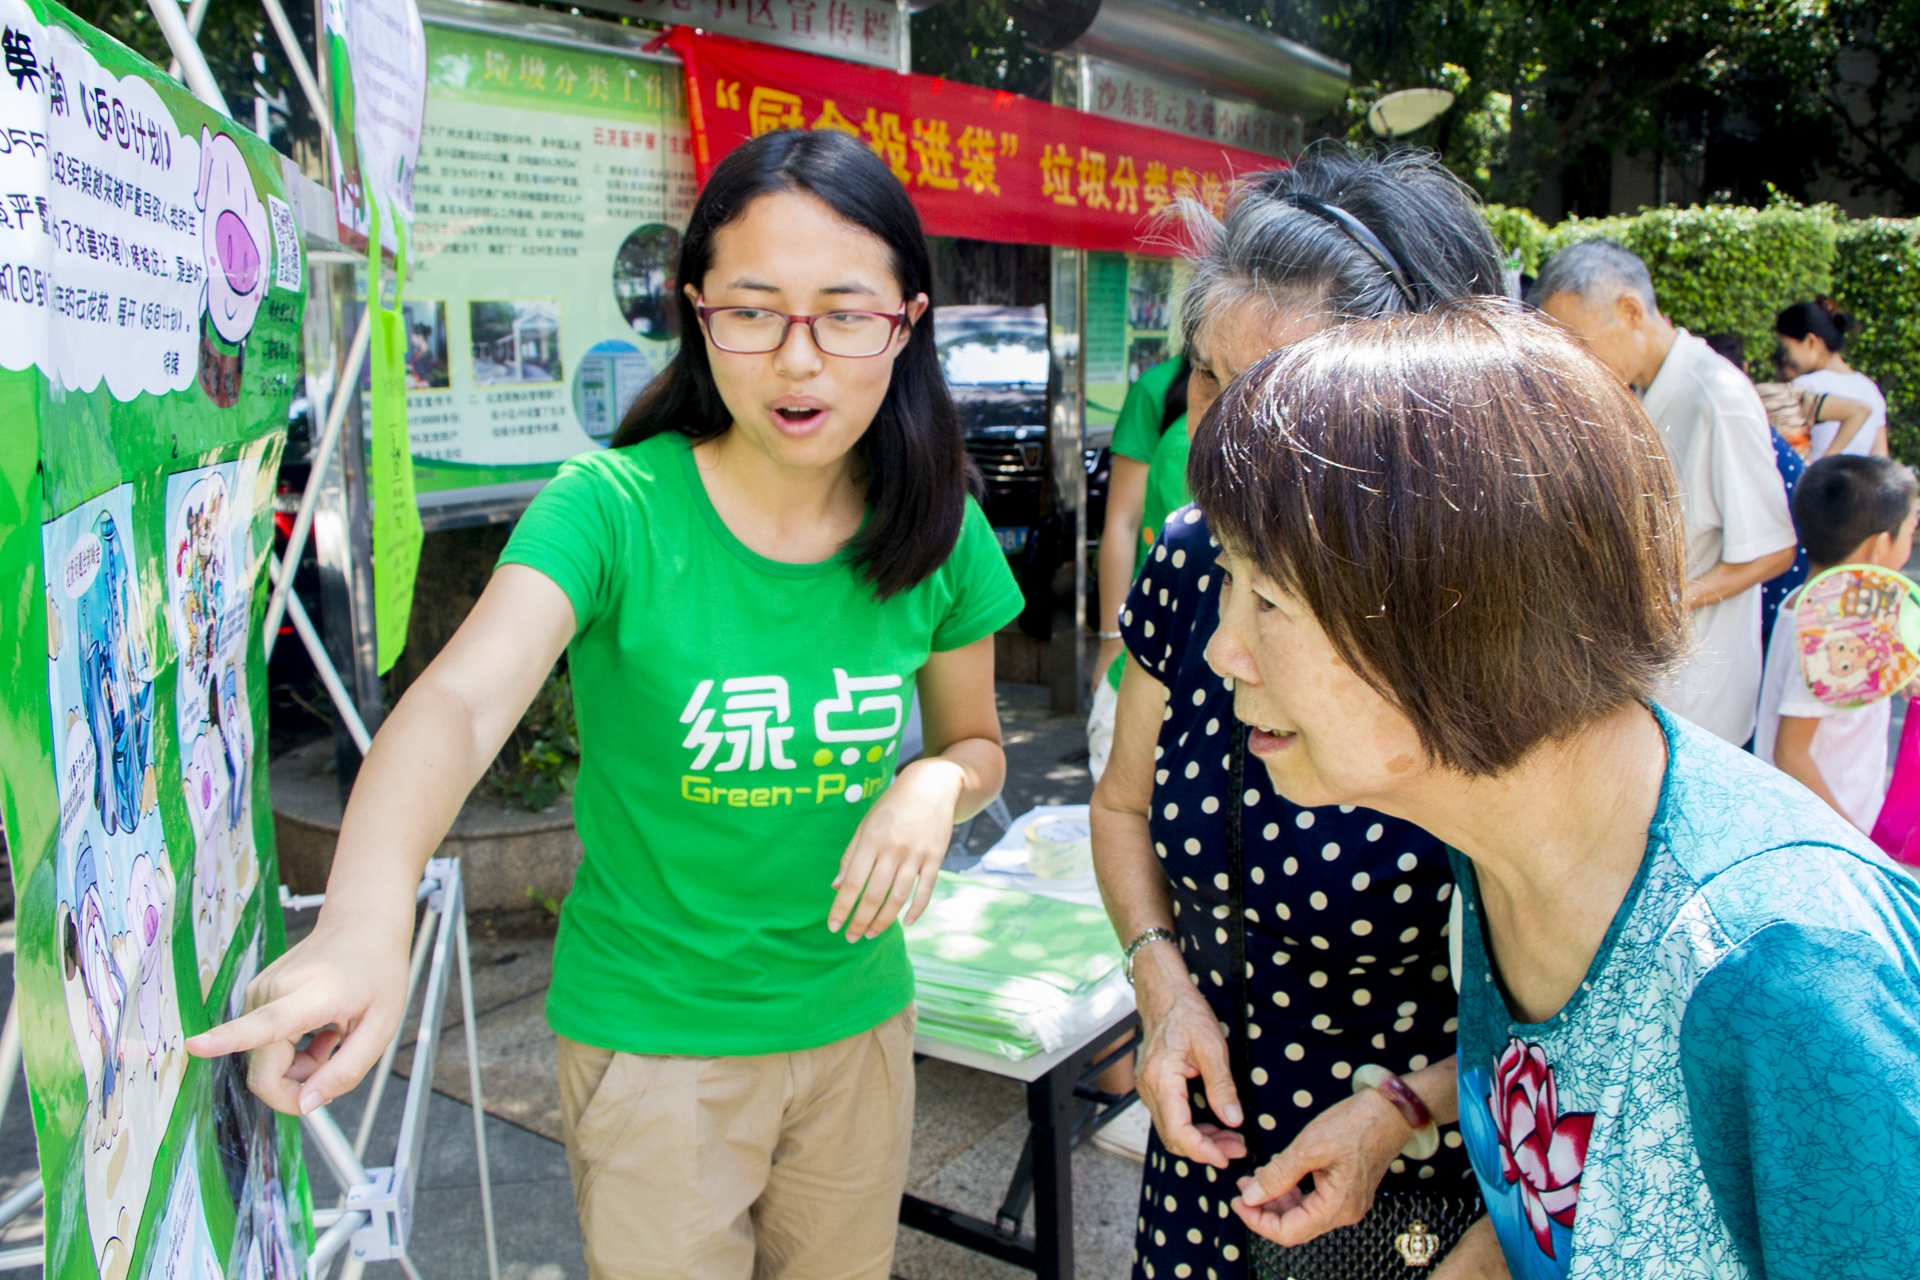 志愿者为居民讲解绿点特别制作的垃圾分类宣传漫画。.jpg